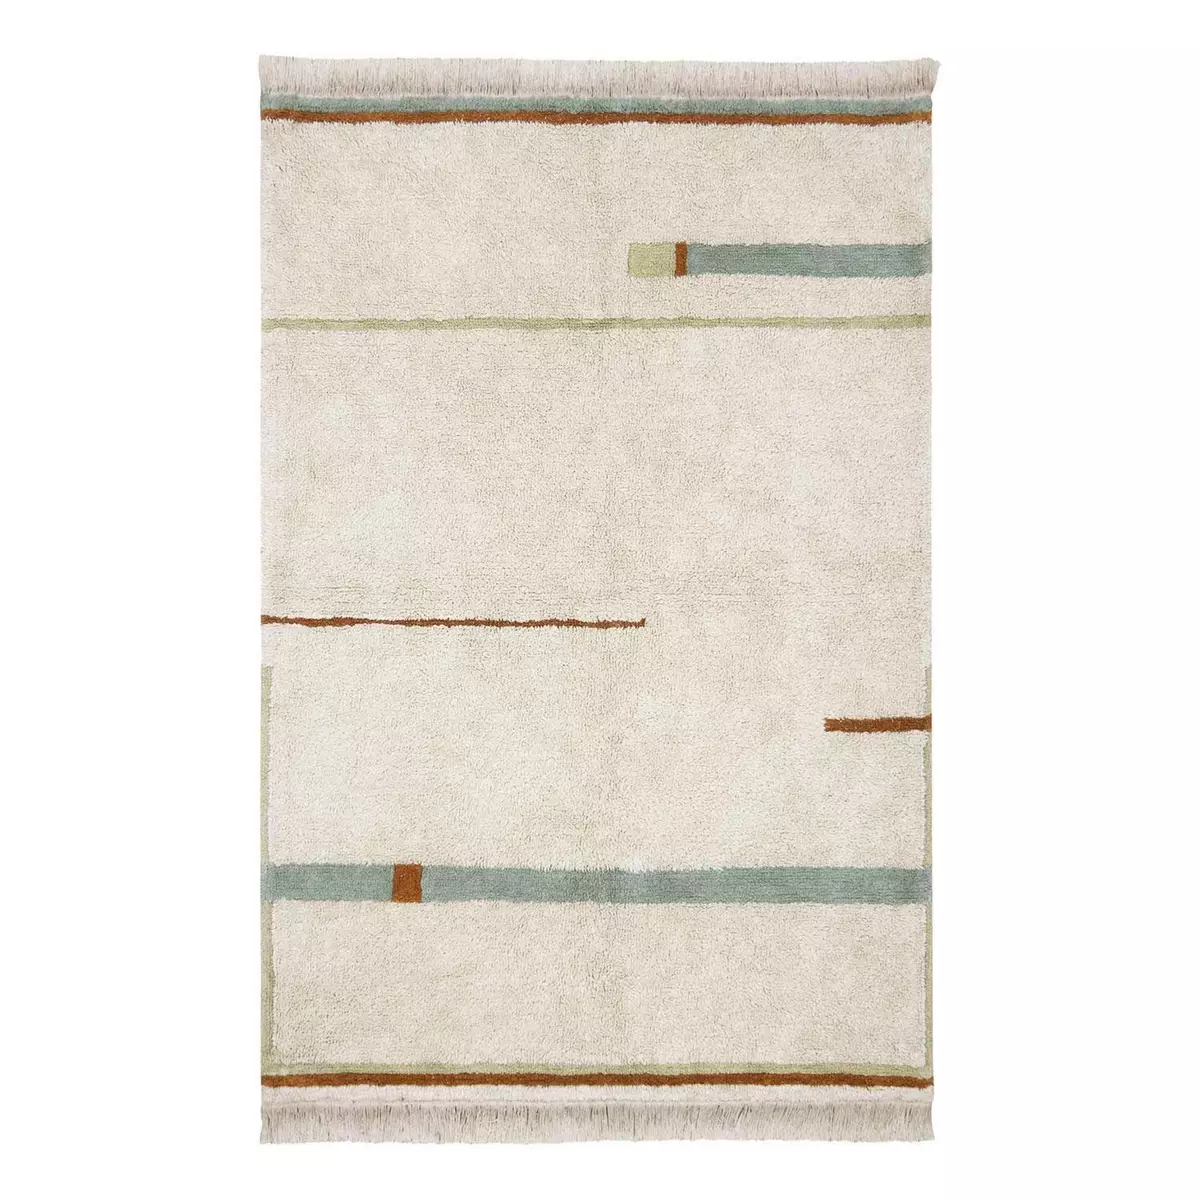 Lorena Canals Tapis lavable en coton - beige avec lignes vert et bleu - 90 x 130 cm